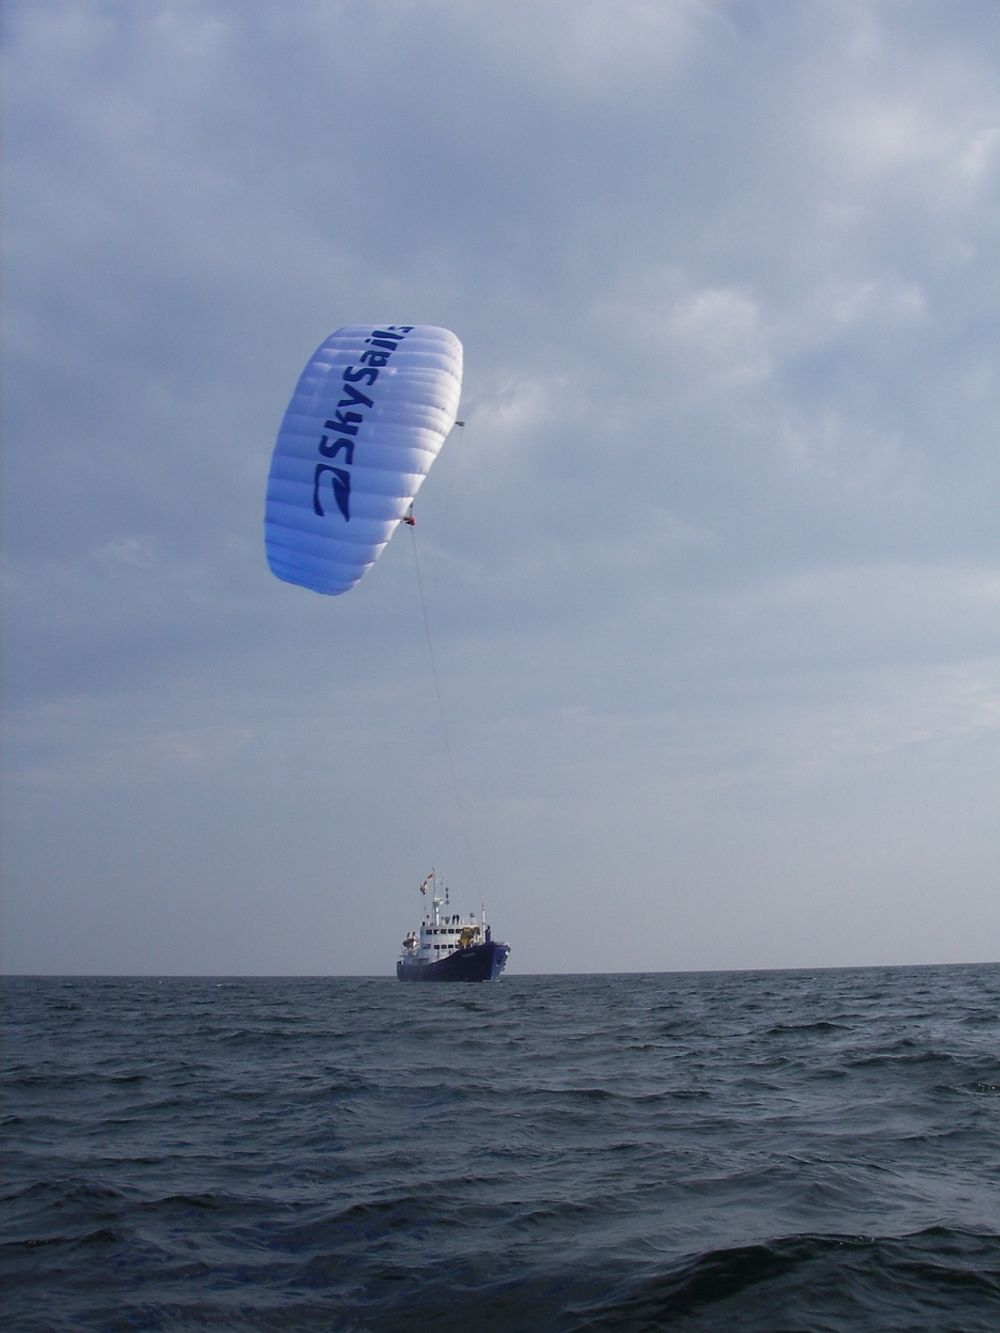 STORT OMRÅDE: Kiten er mest effektiv når båten kjører i området 120 til 140 grader på vindretningen - altså når vinden kommer aktenfor tvers. I praksis kan kiten benyttes helt opp mot 70 grader, mens den minste teoretiske vinkelen er 50 grader mot vinden.